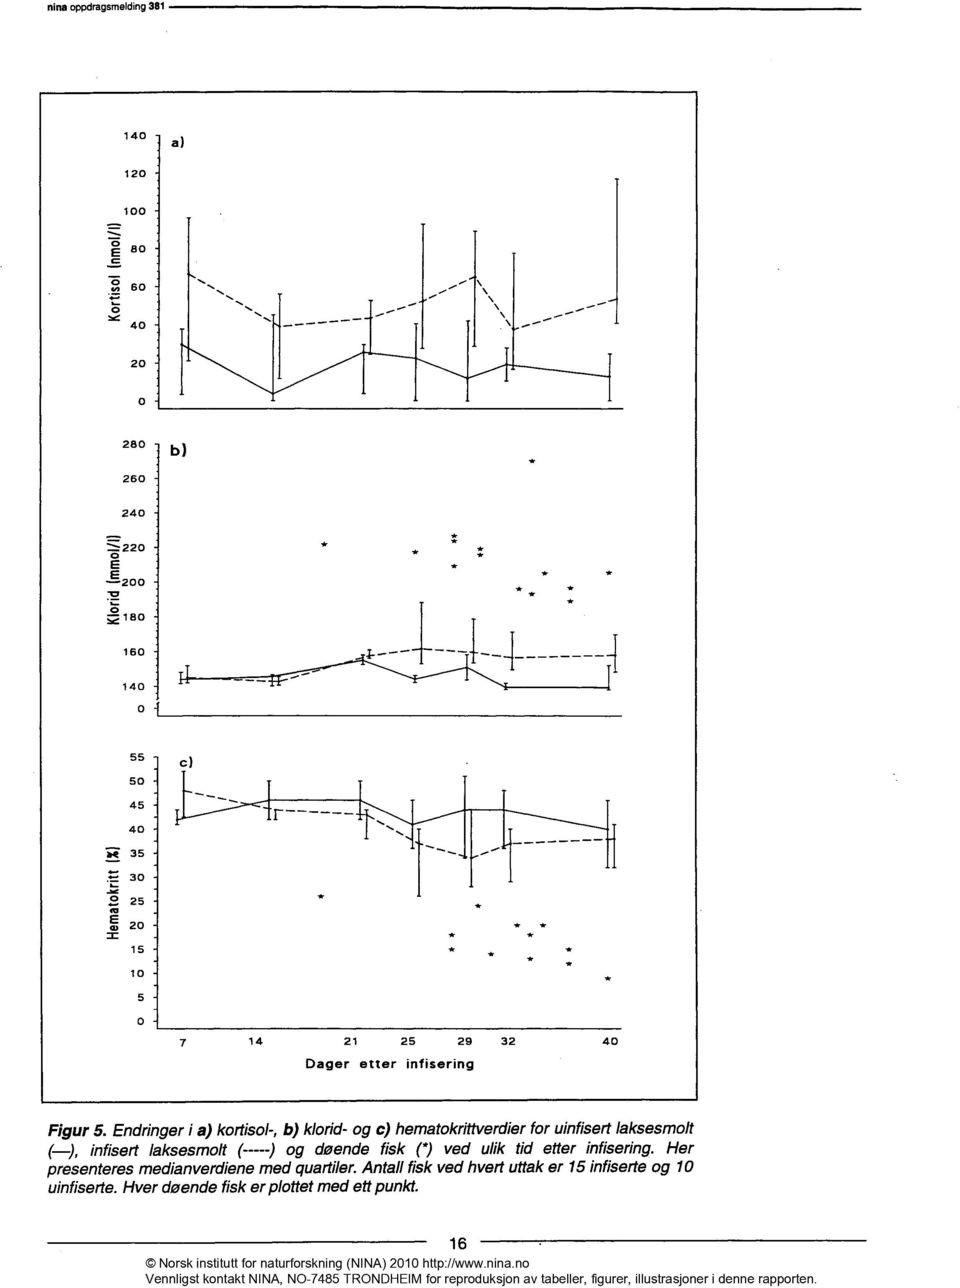 Endringer i a) kortisol-, b) klorid- og c) hematokrittverdier for uinfisert laksesmolt ( ), infisert laksesmolt